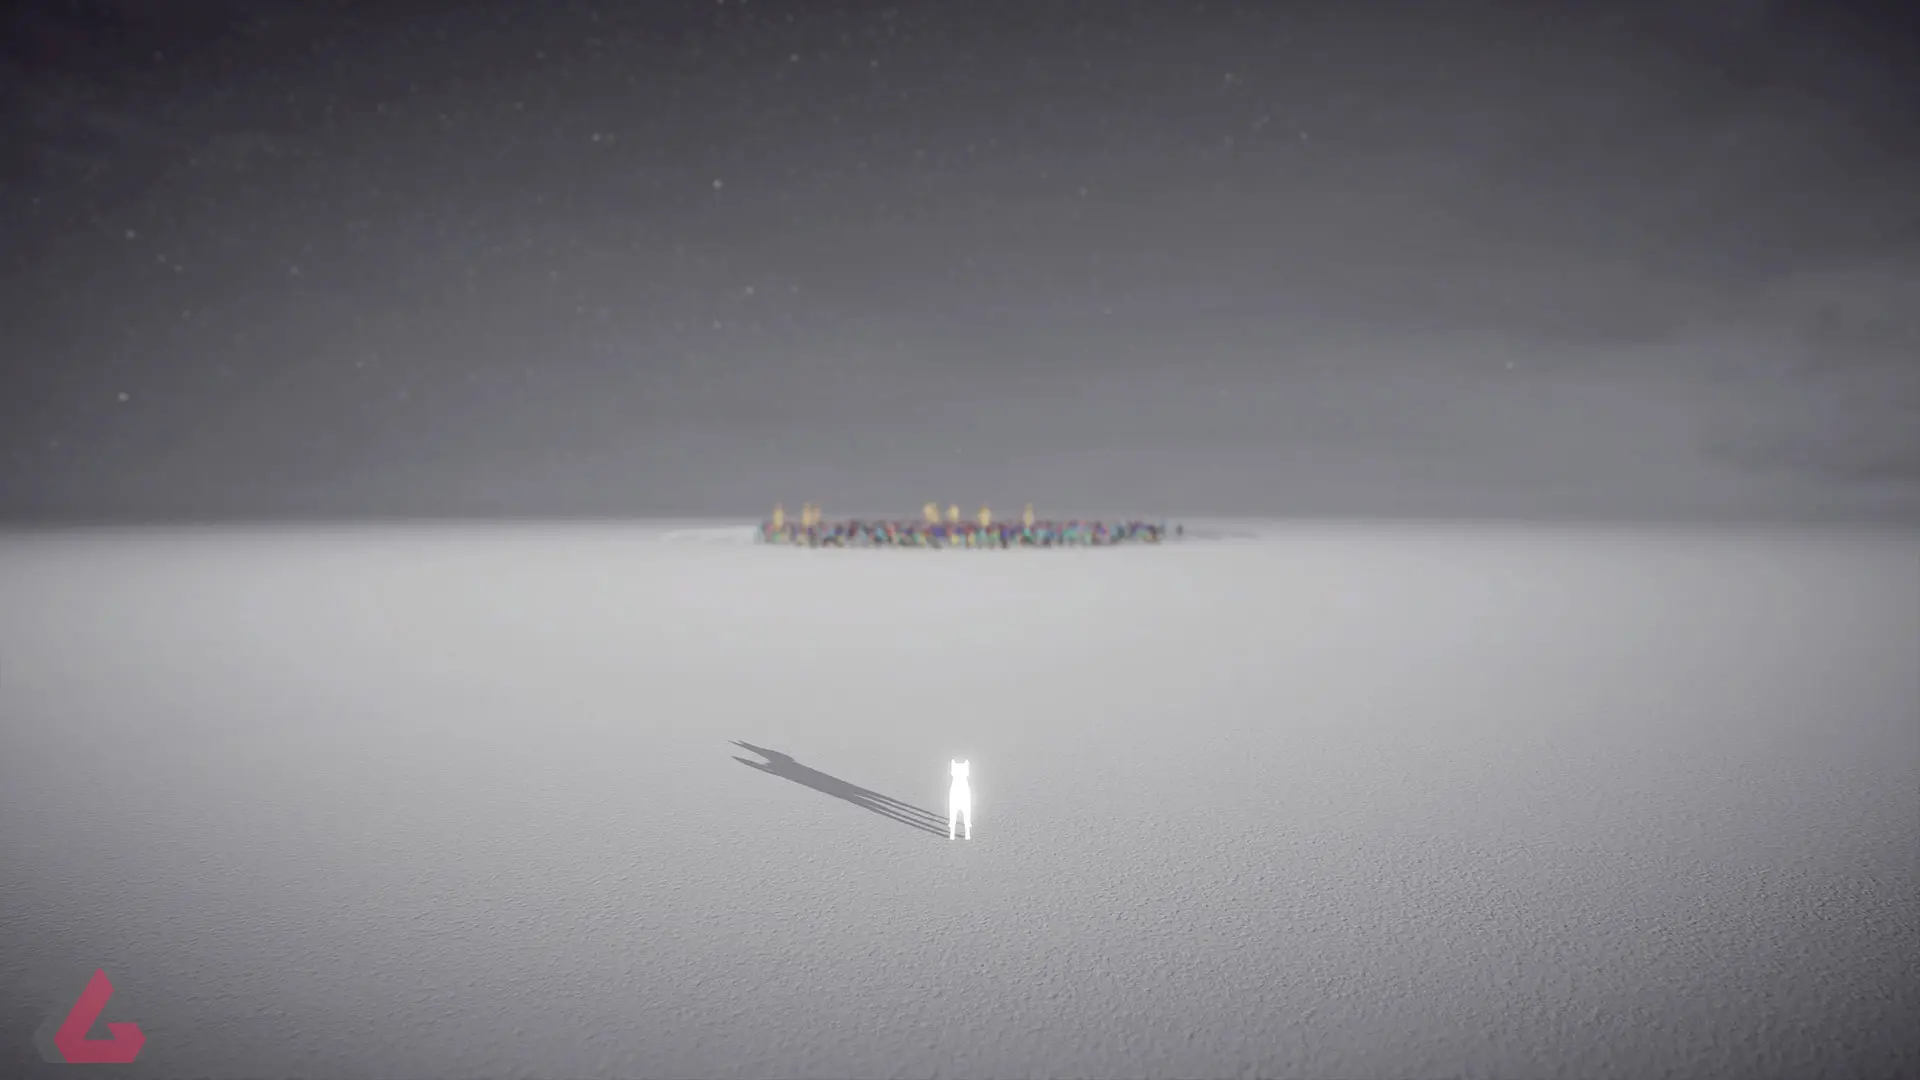 نگاه شیبا اینو نورانی از دور به گروهی از انسان ها در بازی Humanity (هیومنیتی)، محصول سال ۲۰۲۳ میلادی برای پلی استیشن 5، پلی استیشن 4 و کامپیوتر